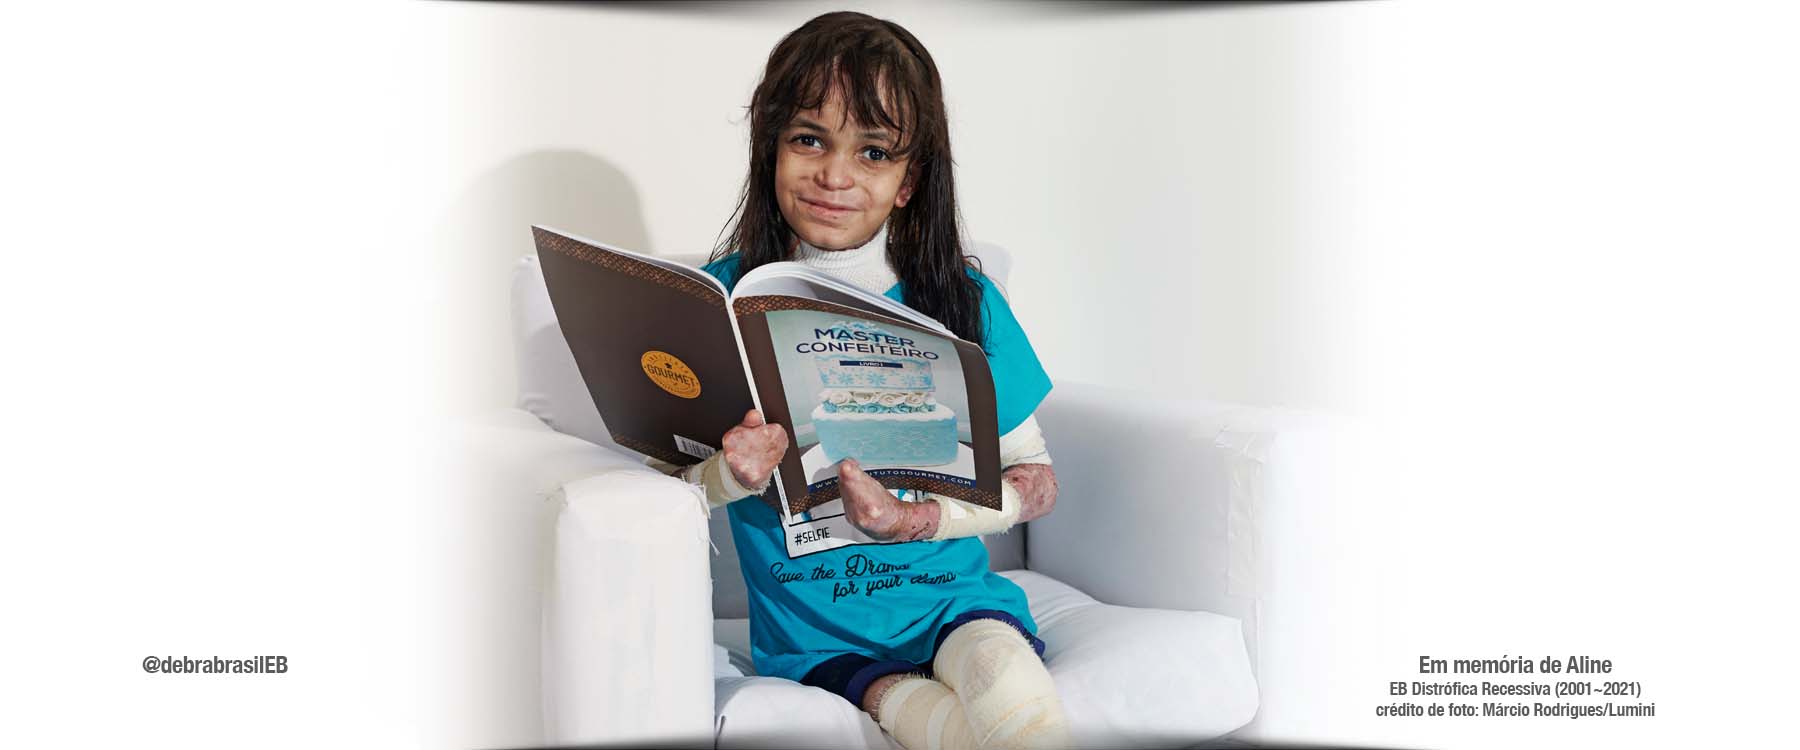 Aline, jovem com epidermólise bolhosa (EB) distrófica recessiva, sentada com o livro “Master Confeiteiro” nas mãos